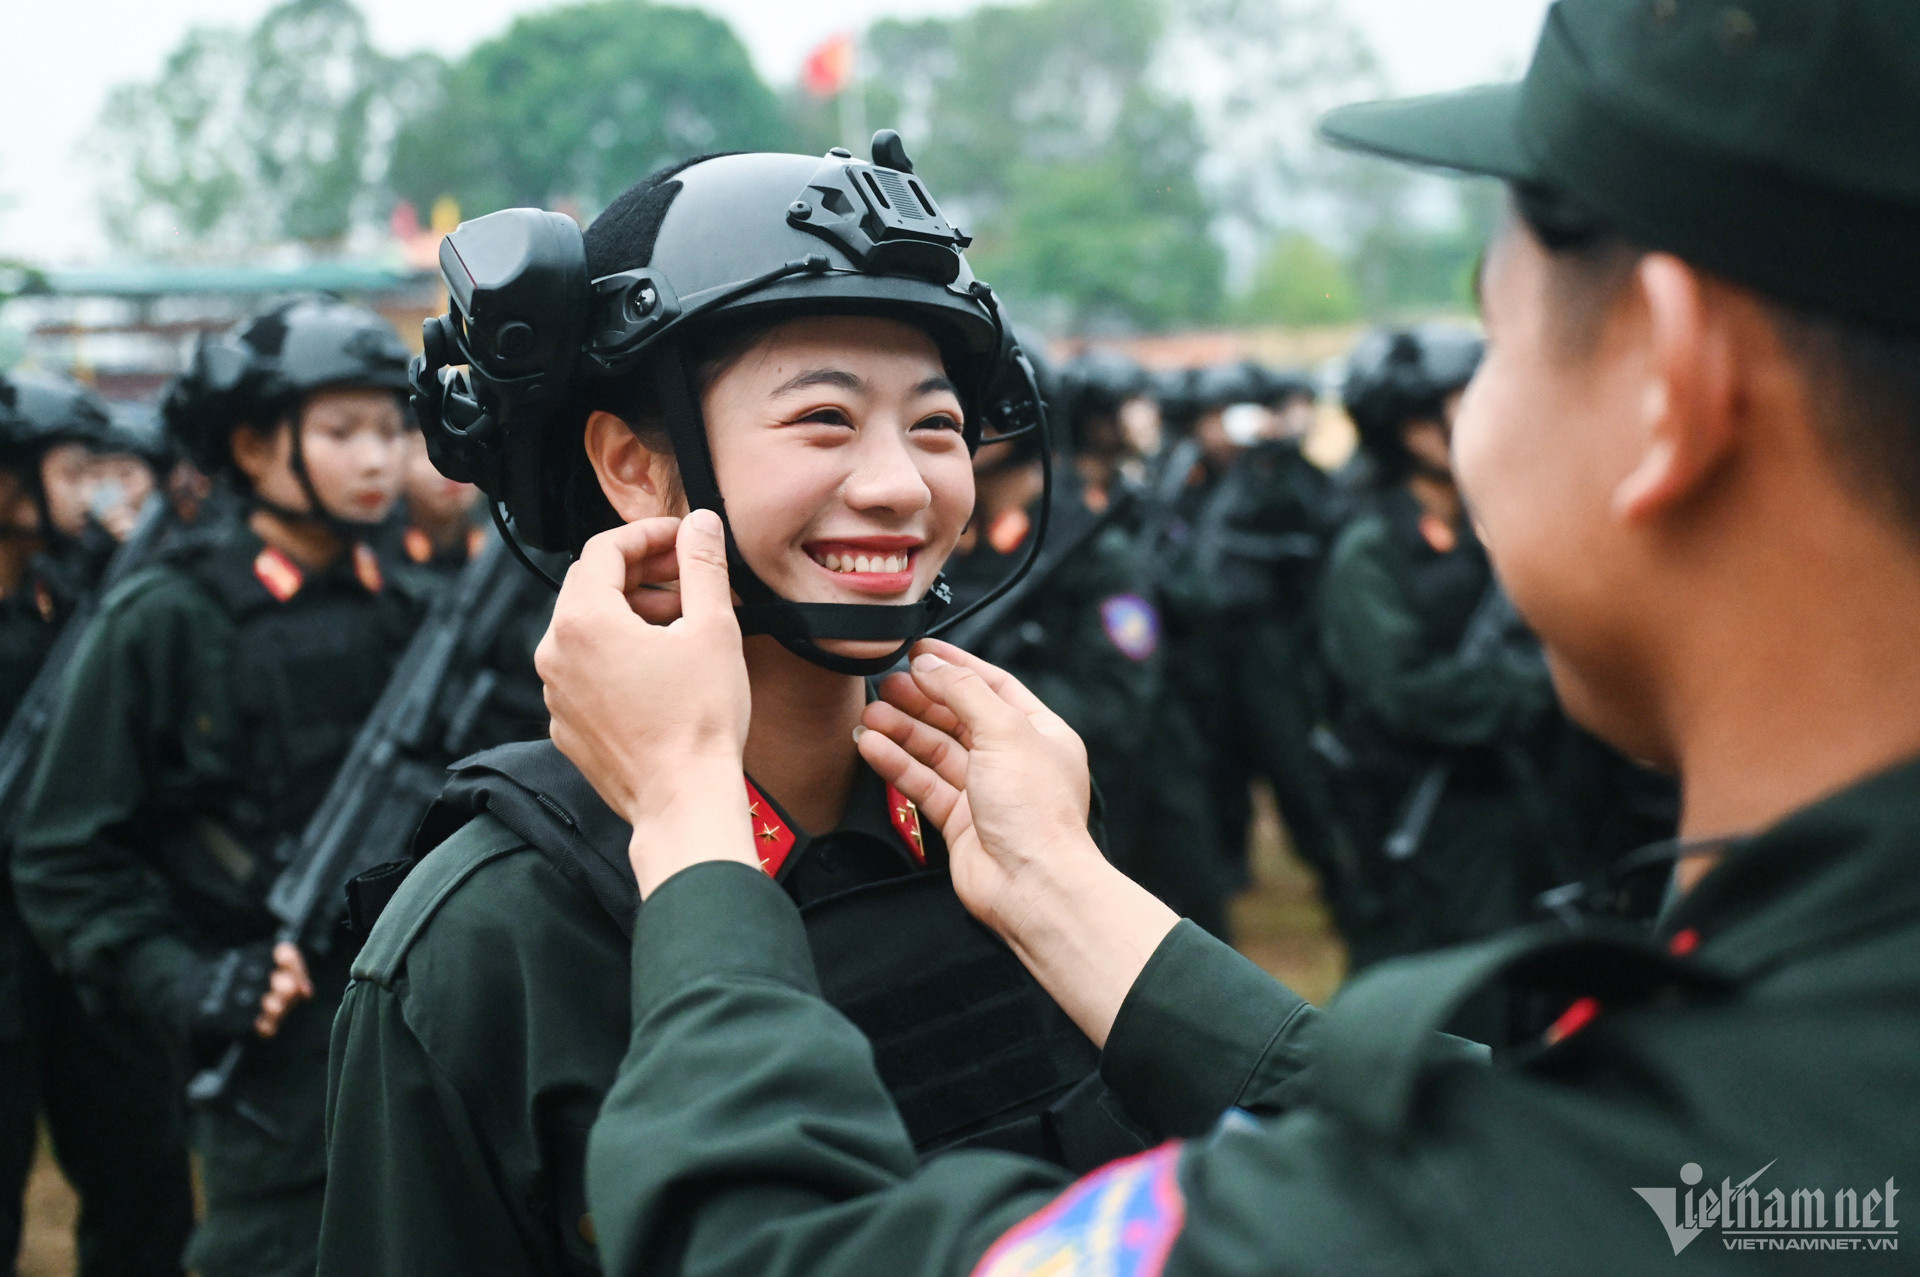 Bóng hồng 2k5 xinh đẹp đi đầu khối trong hàng ngũ Cảnh sát diễu binh Điện Biên Phủ